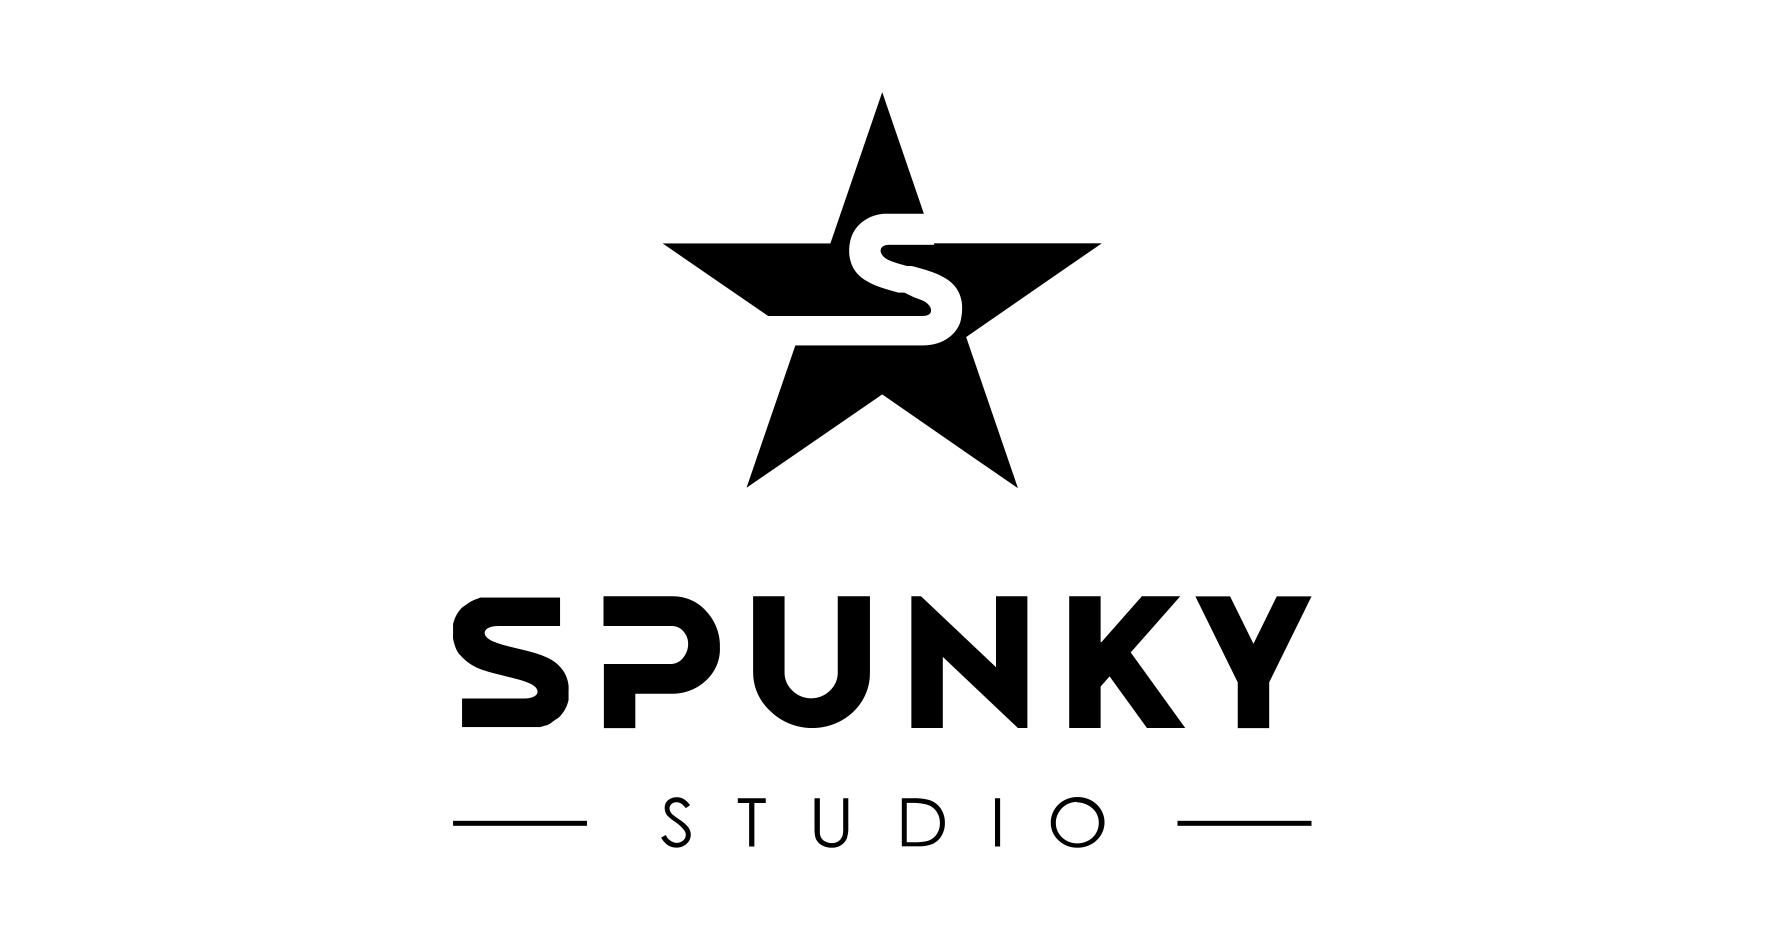 Spunky Studio Одежда и аксессуары, купить онлайн, Spunky Studio в универмаге Bolshoy